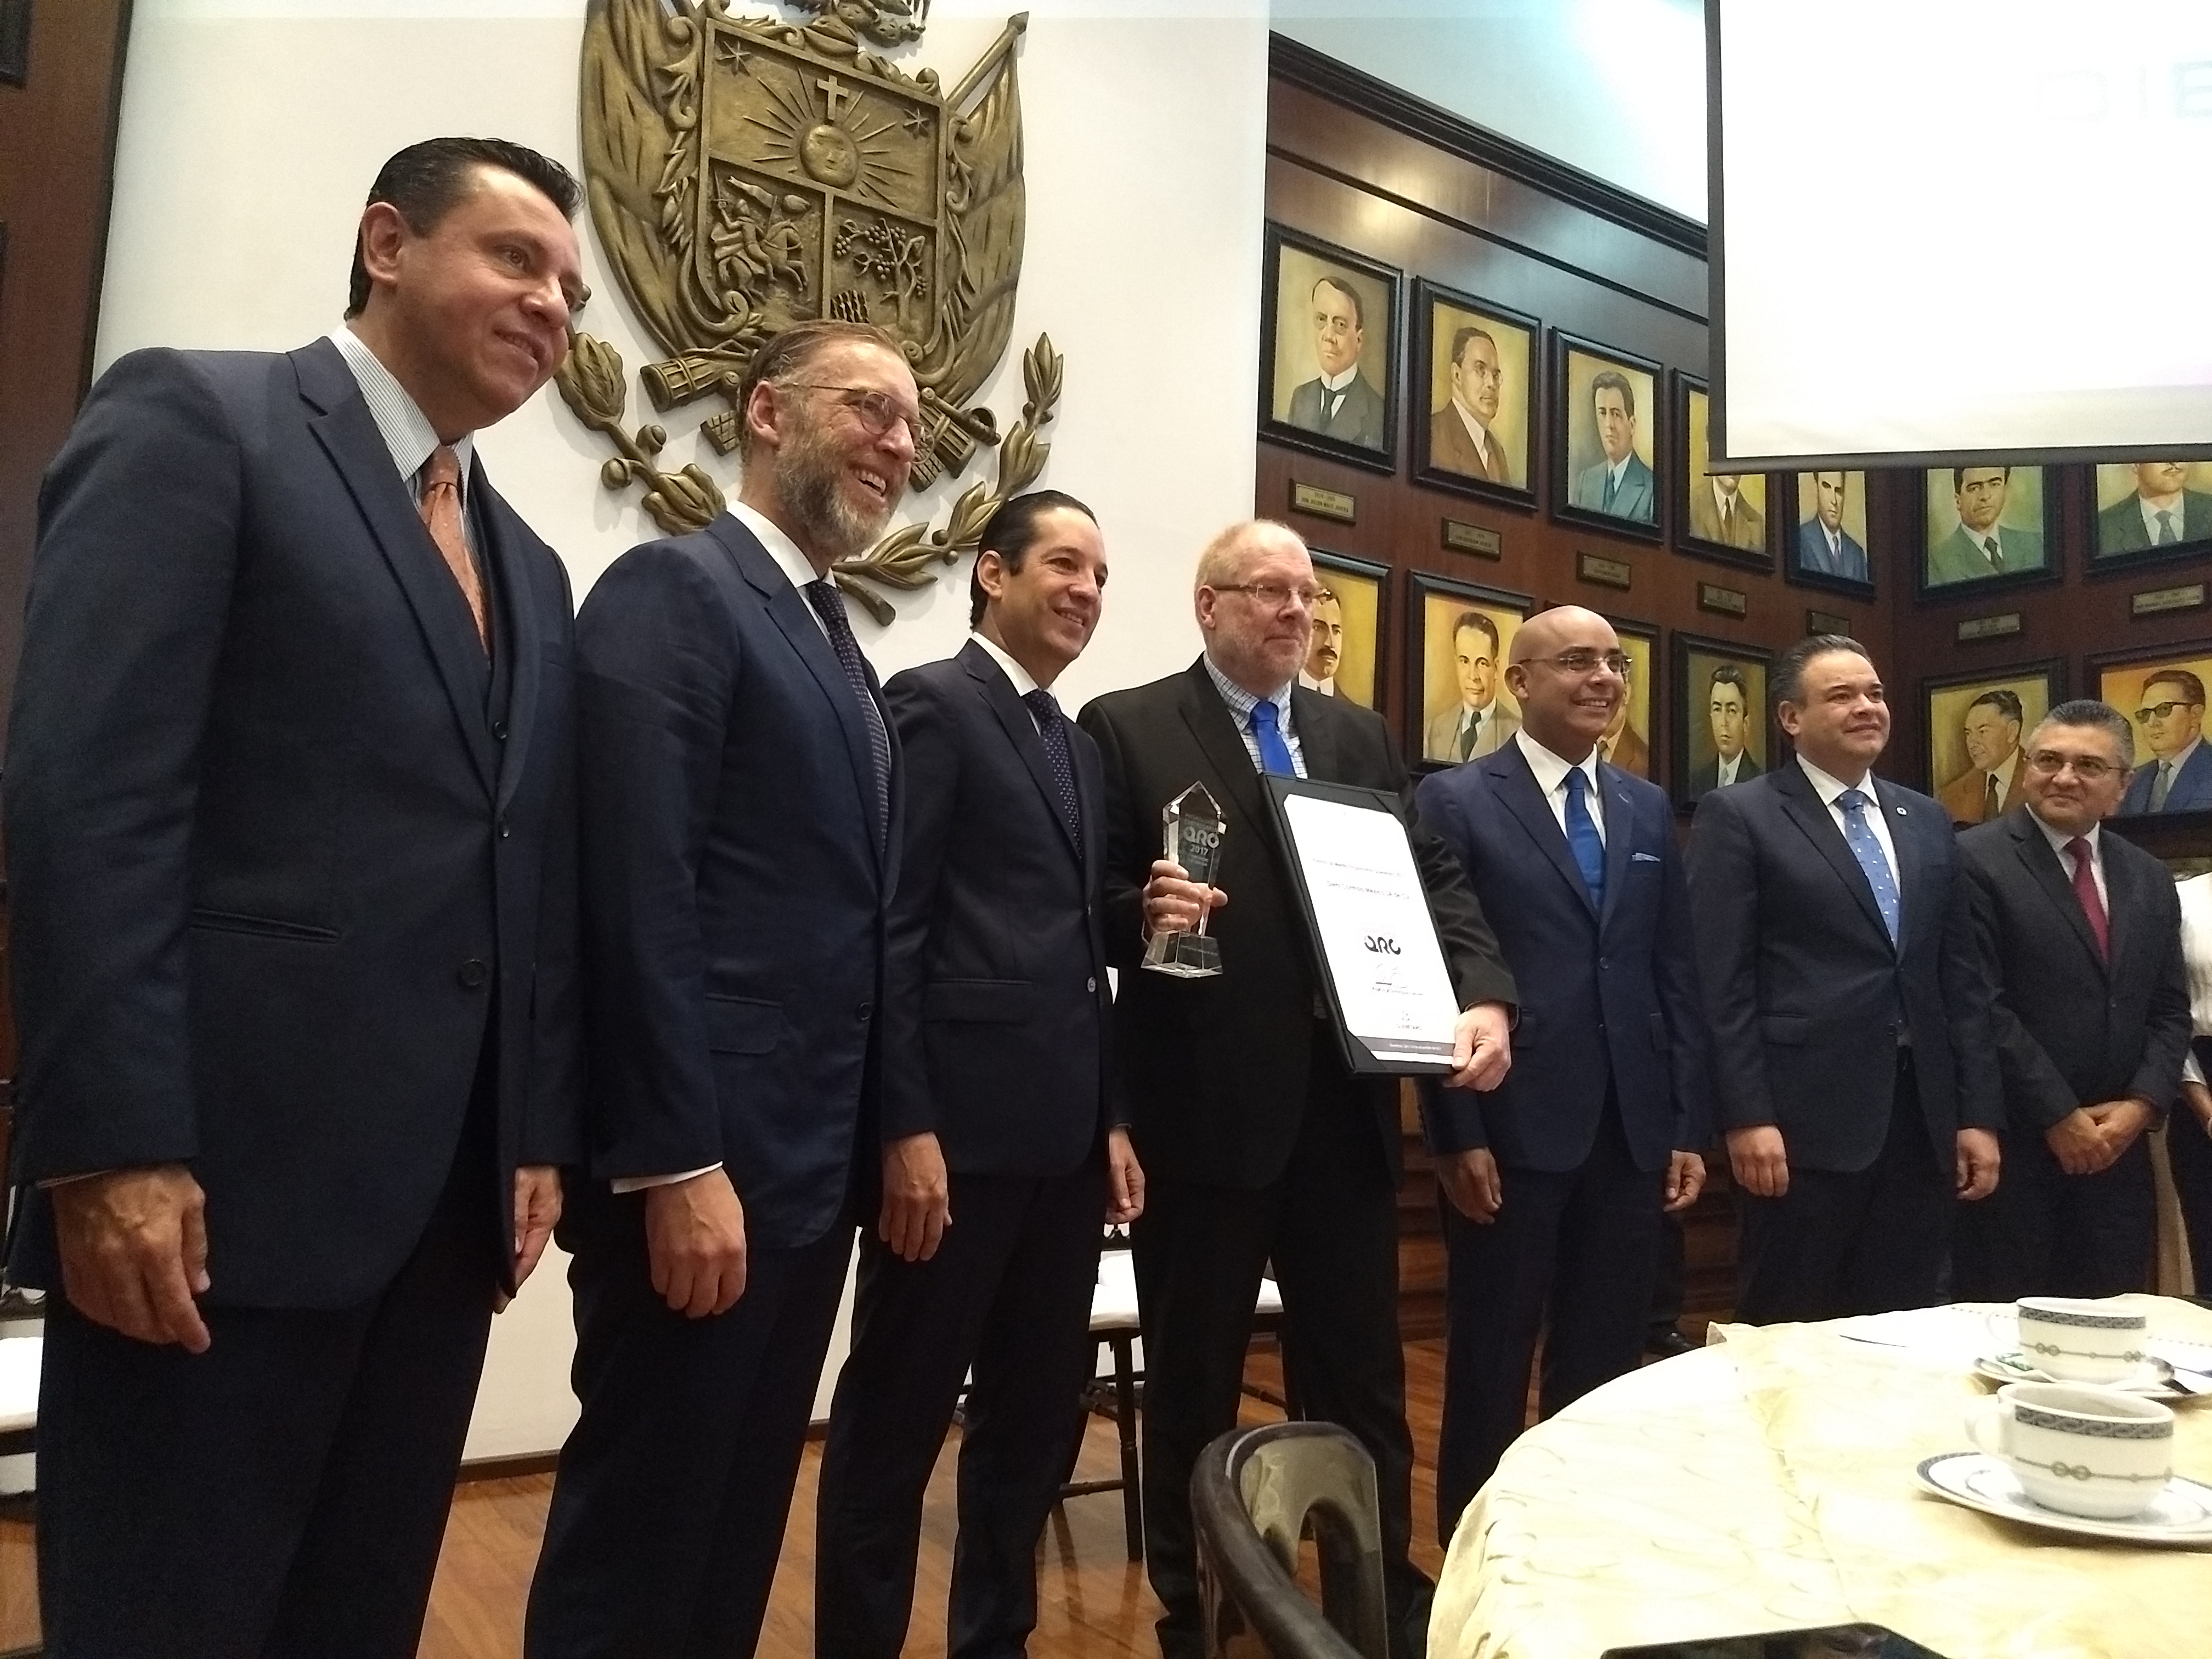  Gobierno de Querétaro reconoce a tres industrias con el “Premio al Mérito Empresarial 2017”